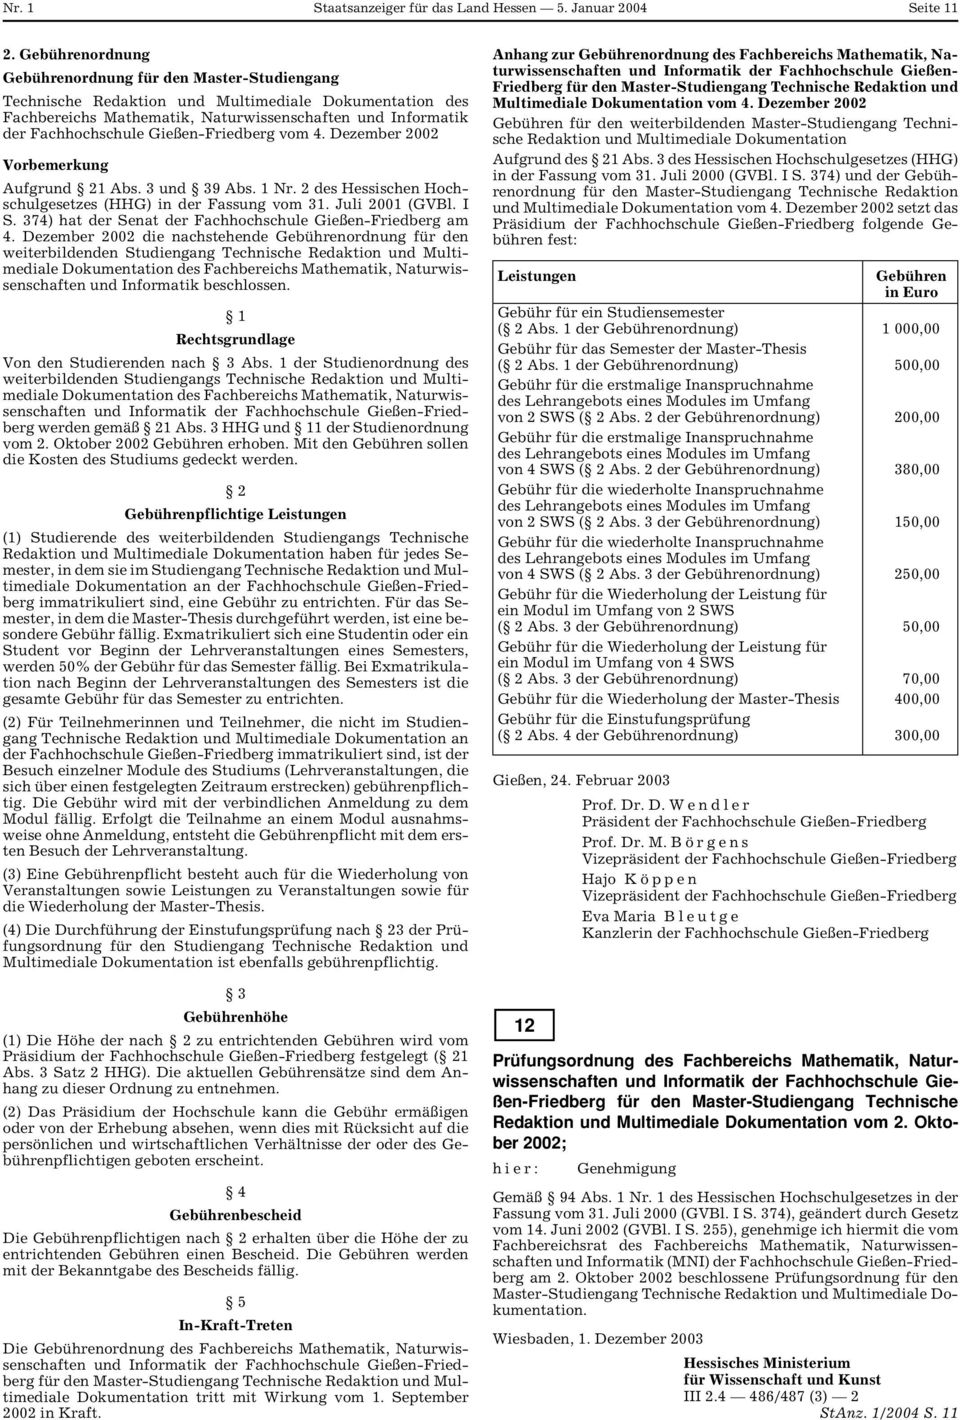 Gießen-Friedberg vom 4. Dezember 2002 Vorbemerkung Aufgrund 21 Abs. 3 und 39 Abs. 1 Nr. 2 des Hessischen Hochschulgesetzes (HHG) in der Fassung vom 31. Juli 2001 (GVBl. I S.